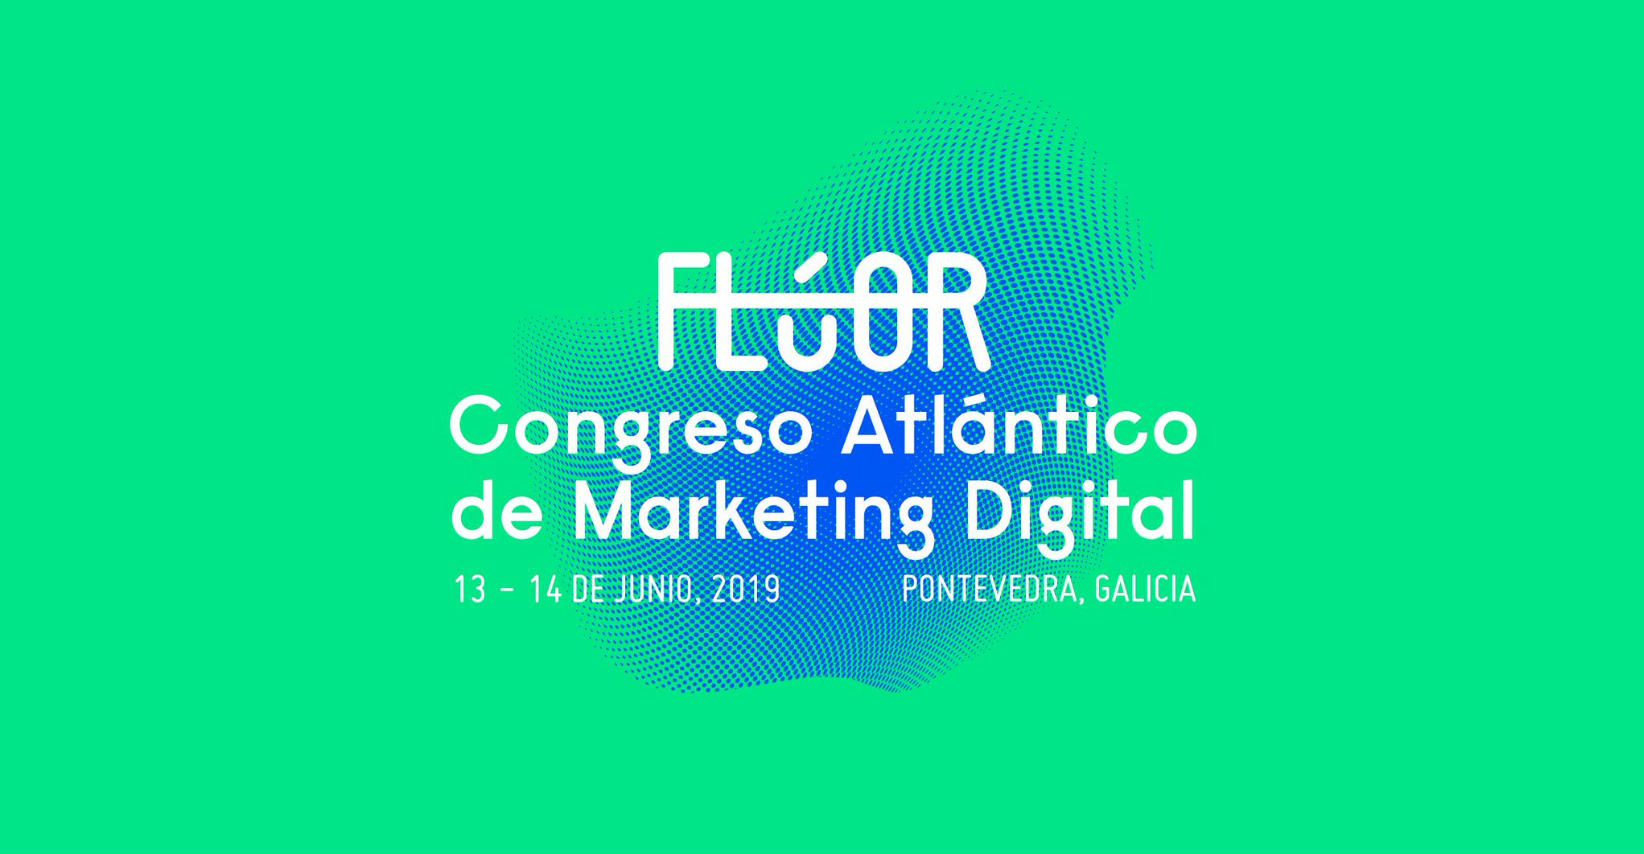 El Congreso Flúor de Marketing Digital se celebra en Pontevedra el 13 y 14 de junio. Dinahosting colabora como patrocinador del evento.